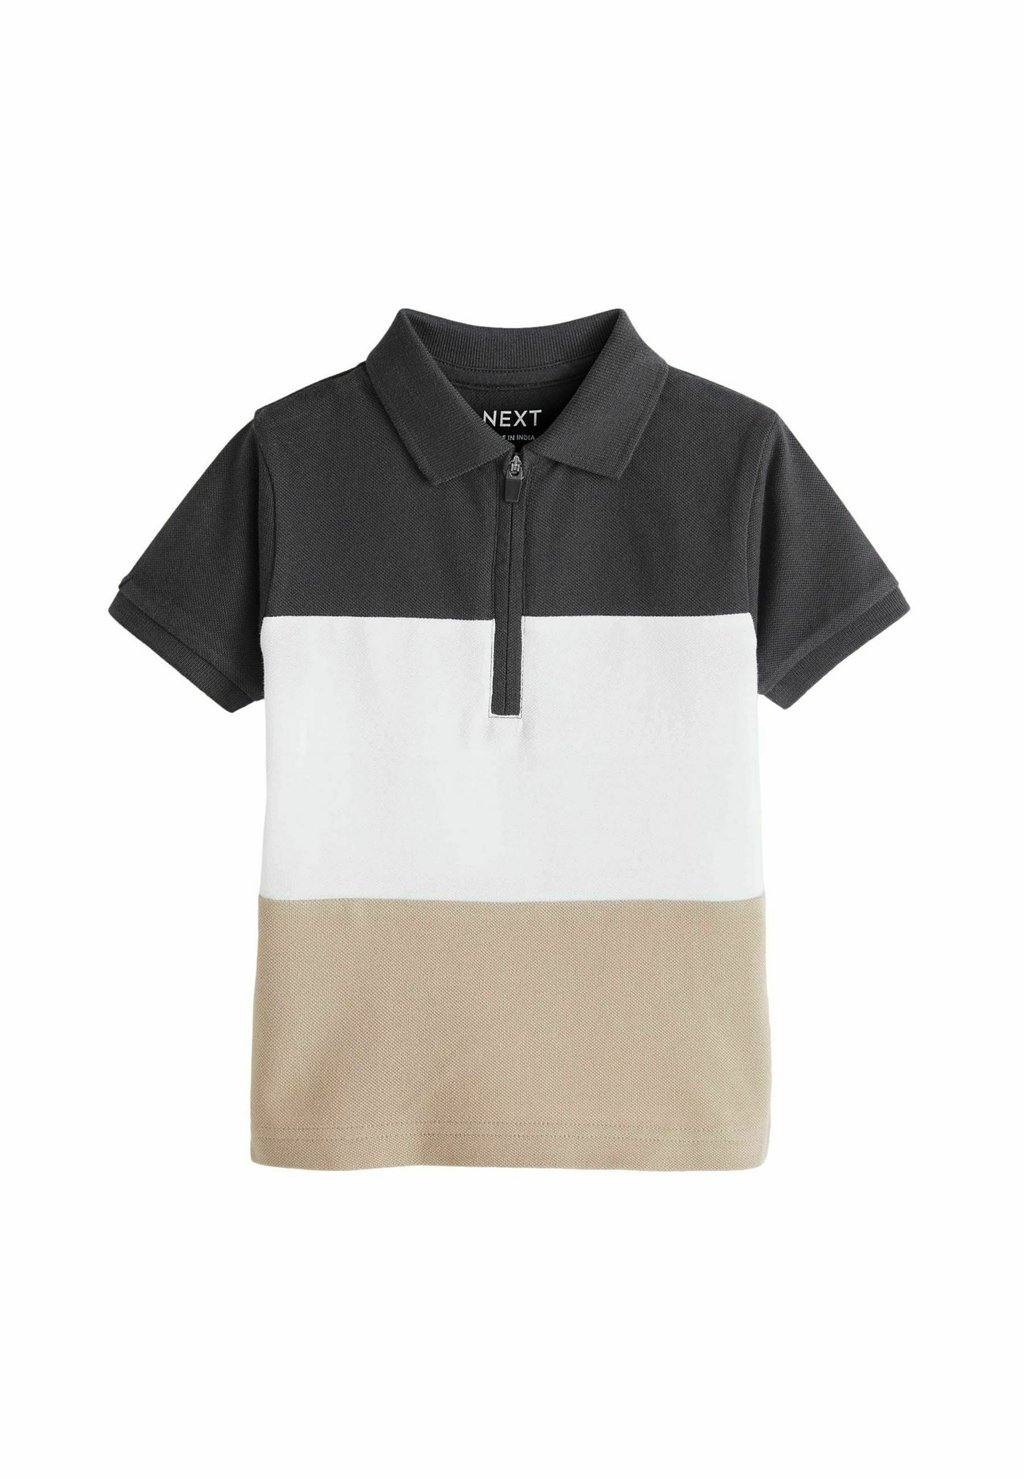 Рубашка поло SHORT SLEEVE REGULAR FIT Next, цвет black cream рубашка поло short sleeve regular fit next цвет neutral